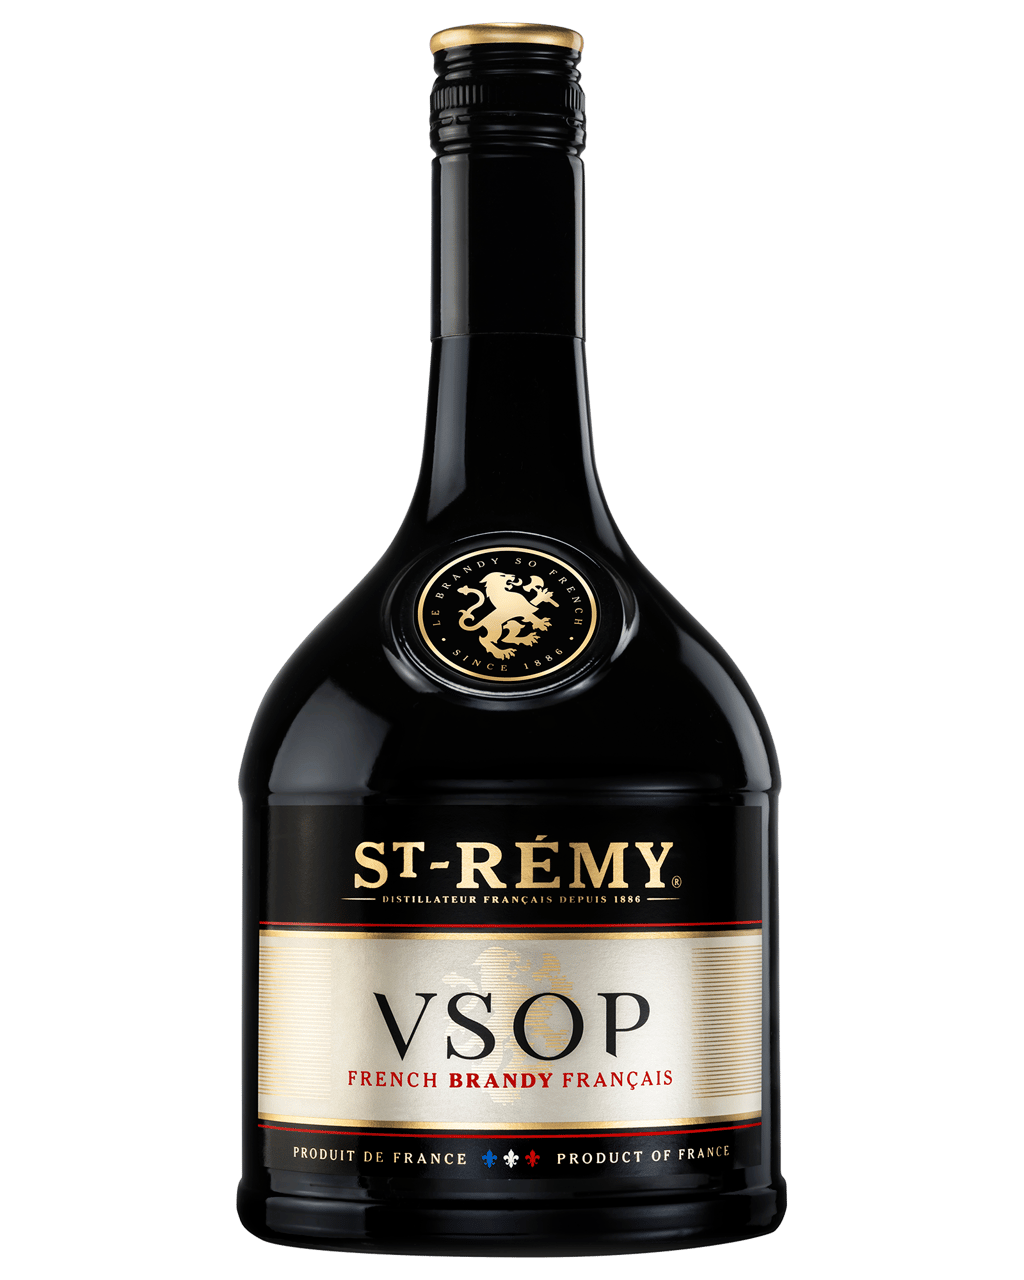 St. Remy VSOP Brandy